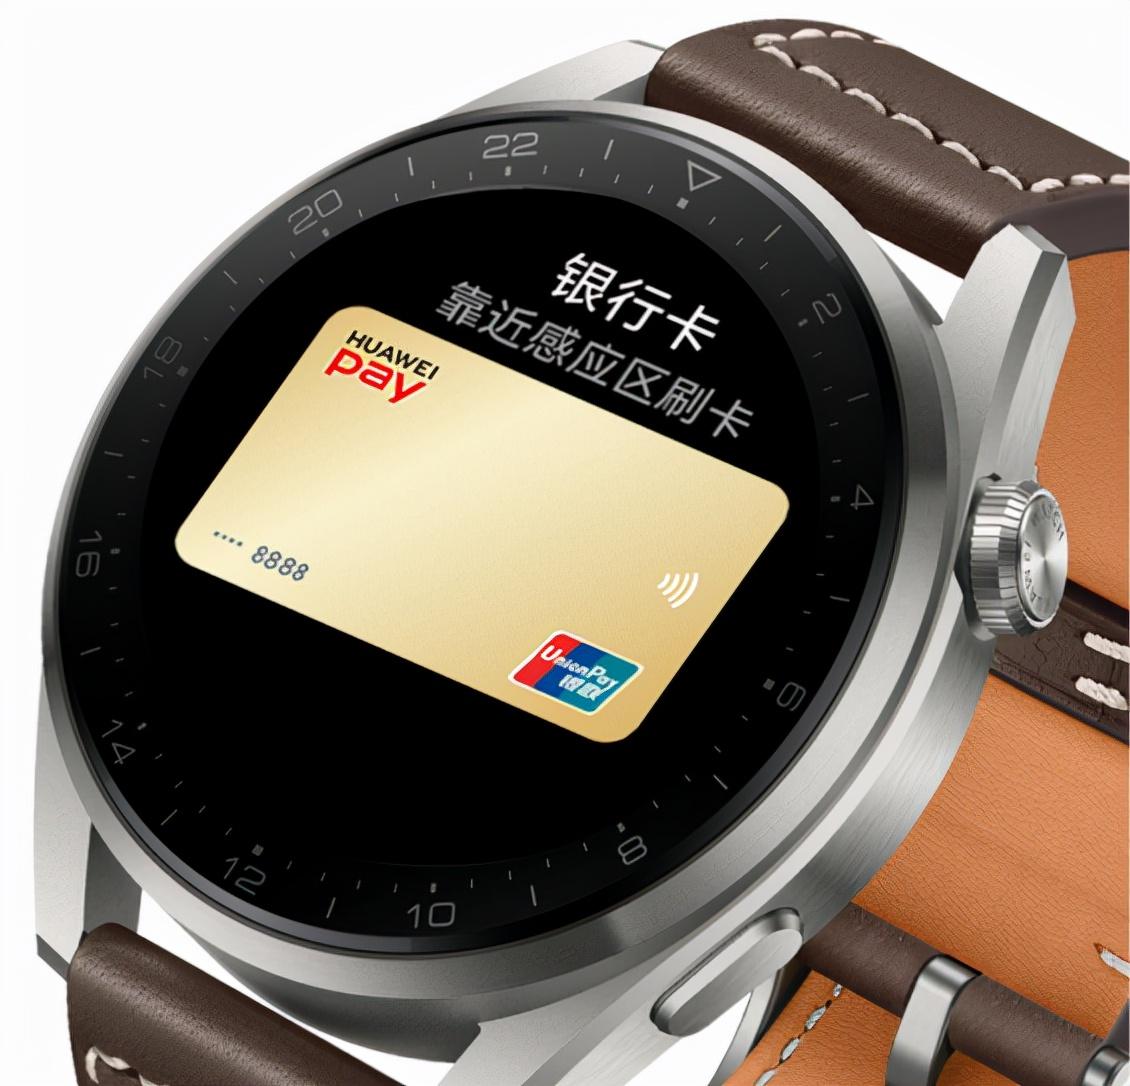 pay watch智能手表如何使用